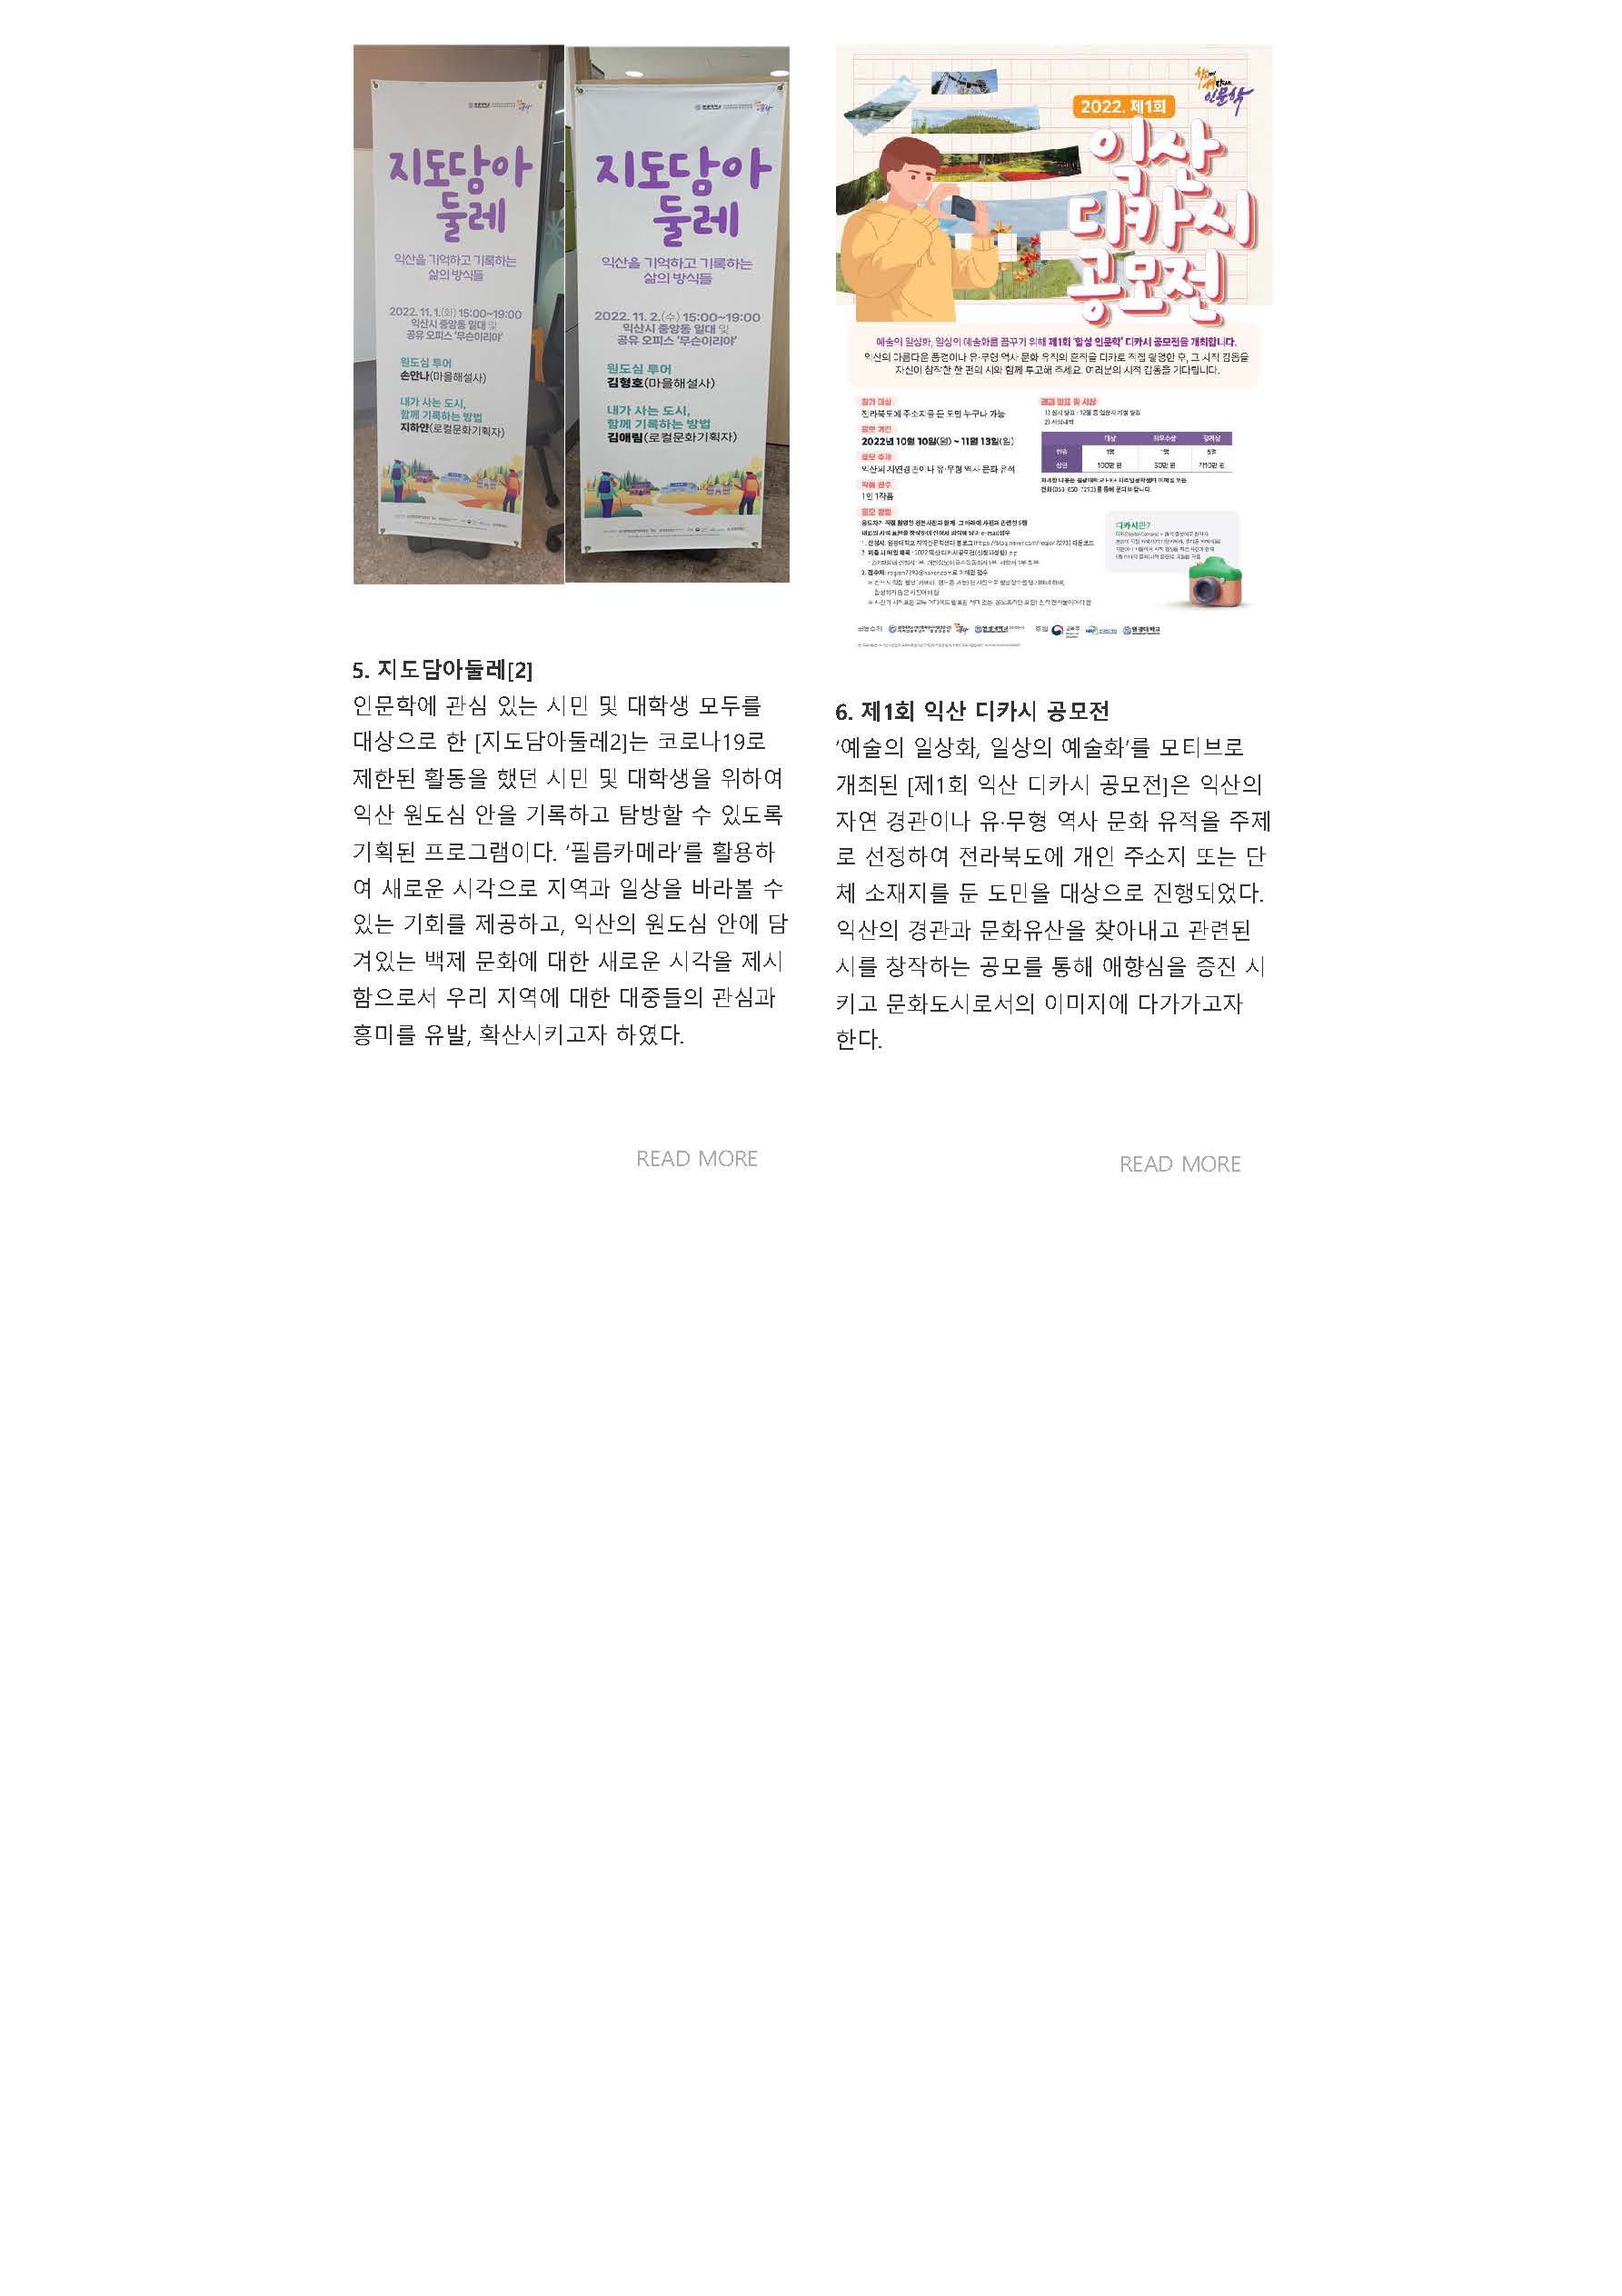 원광대 HK+ 동북아시아인문사회연구소 뉴스레터 VOL.13_페이지_12.jpg